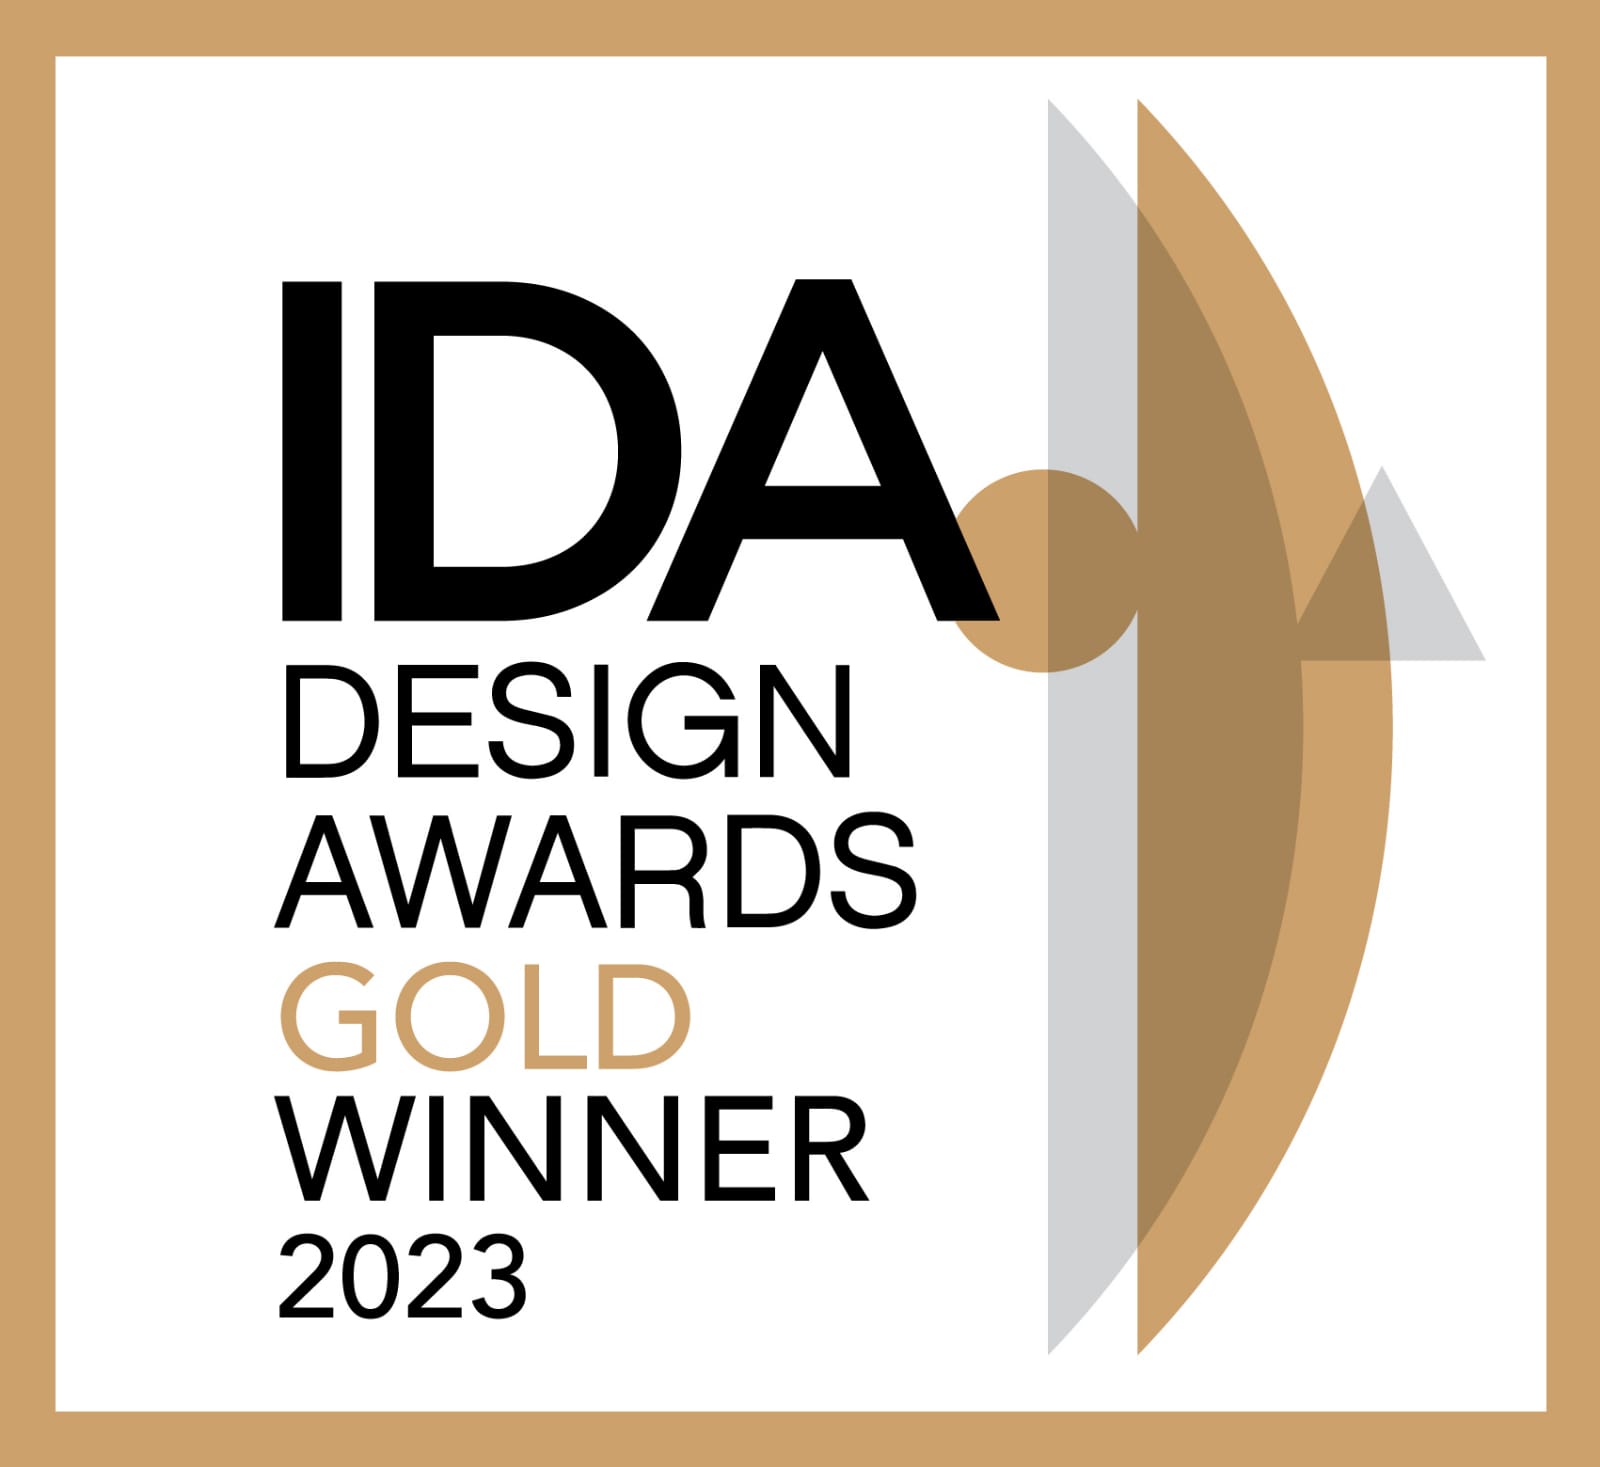 gold winner at IDA design awards